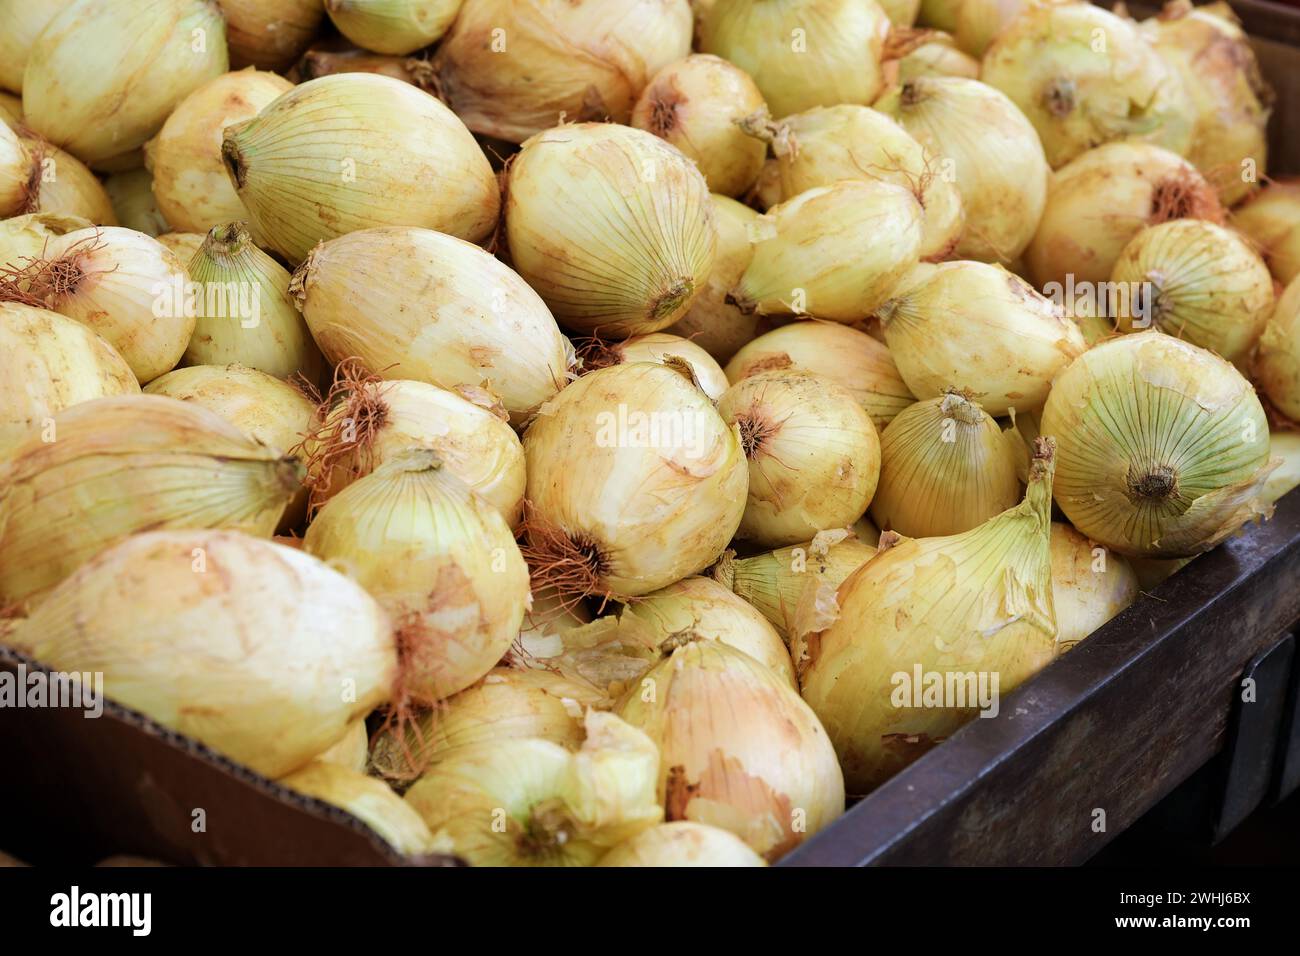 Zwiebelhaufen in einem Behälter zum Verkauf auf dem Markt, geerntet von einem ökologischen Landwirtschaftsbetrieb, Kopierraum, ausgewählter Fokus Stockfoto